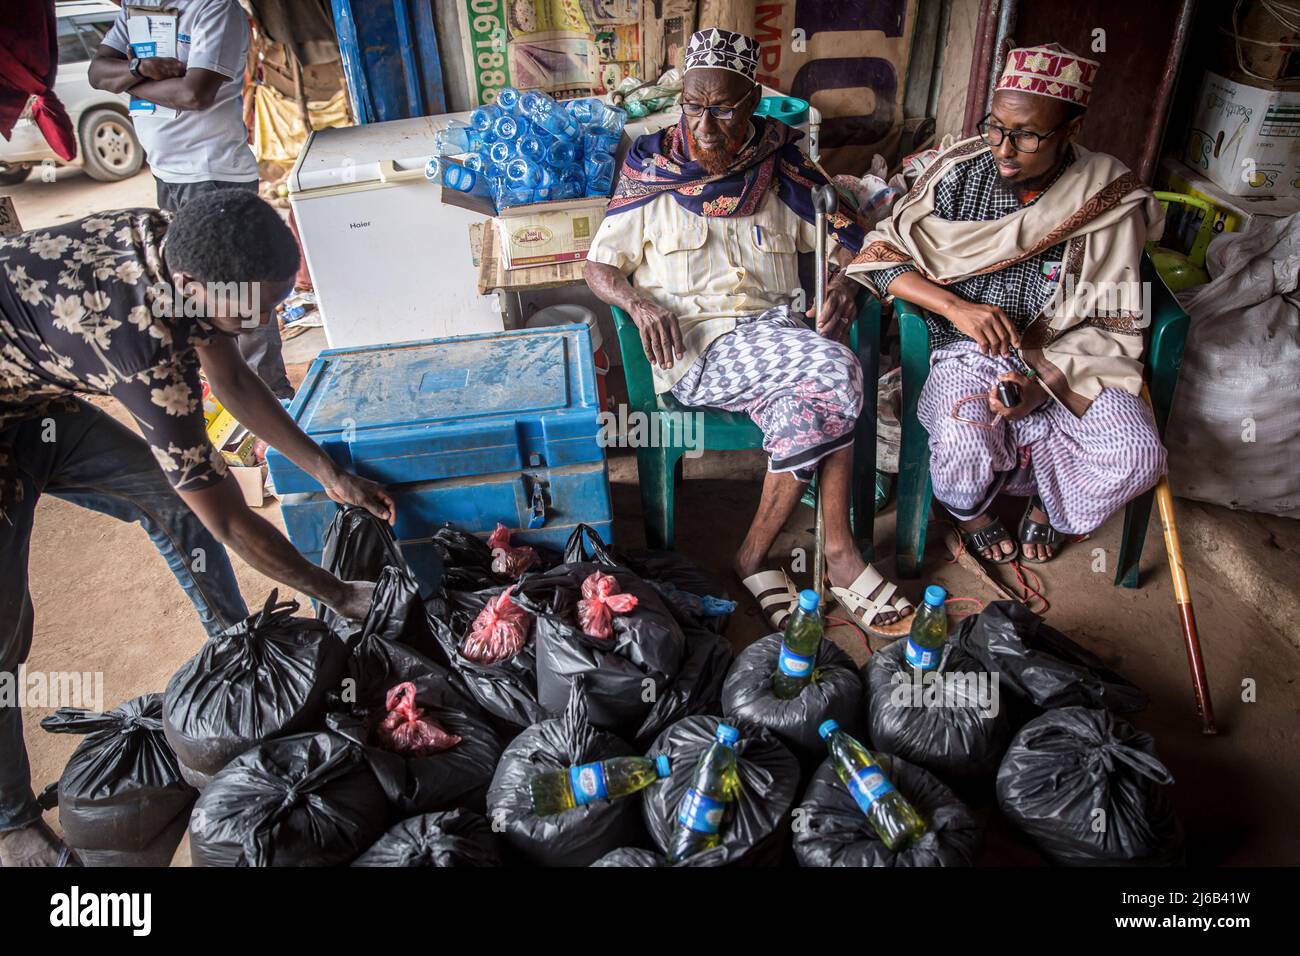 Los hombres somalíes reúnen paquetes de arroz, aceite de cocina y otros artículos esenciales para las familias necesitadas en el exterior de una tienda en Dollow, Jubaland, en el suroeste de Somalia. Foto de stock